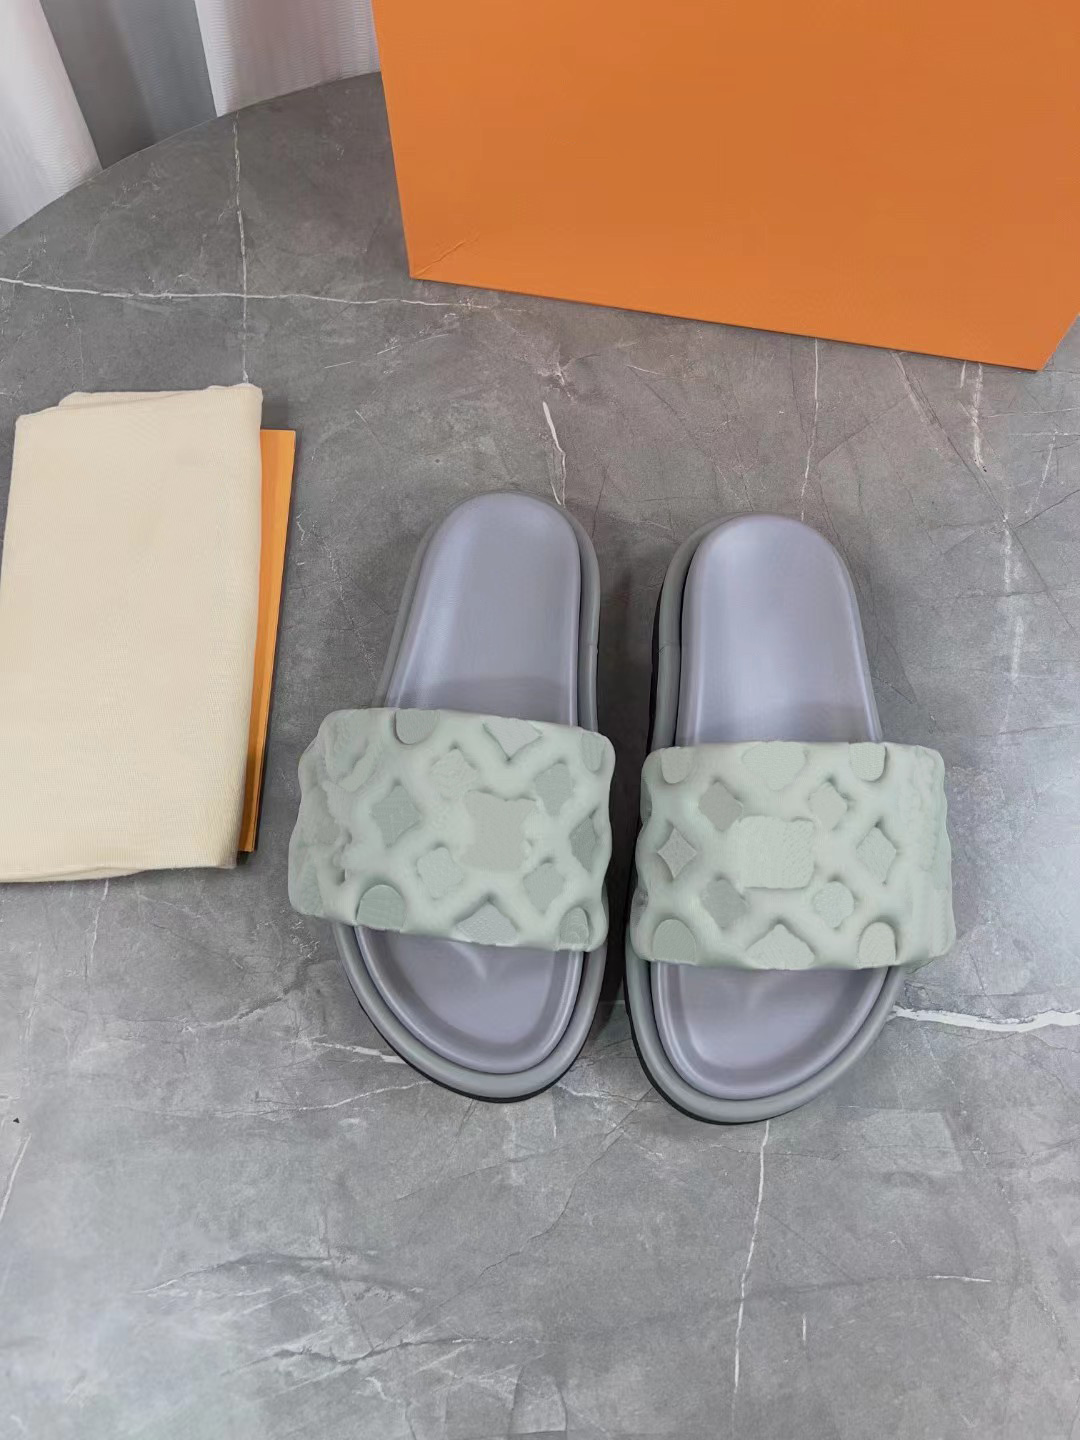 디자이너 신발 여성 신발 두꺼운 밑창 신발 고품질 샌들 슬리퍼 여름 슬라이드 비치 슬리퍼 상자 무료 배송